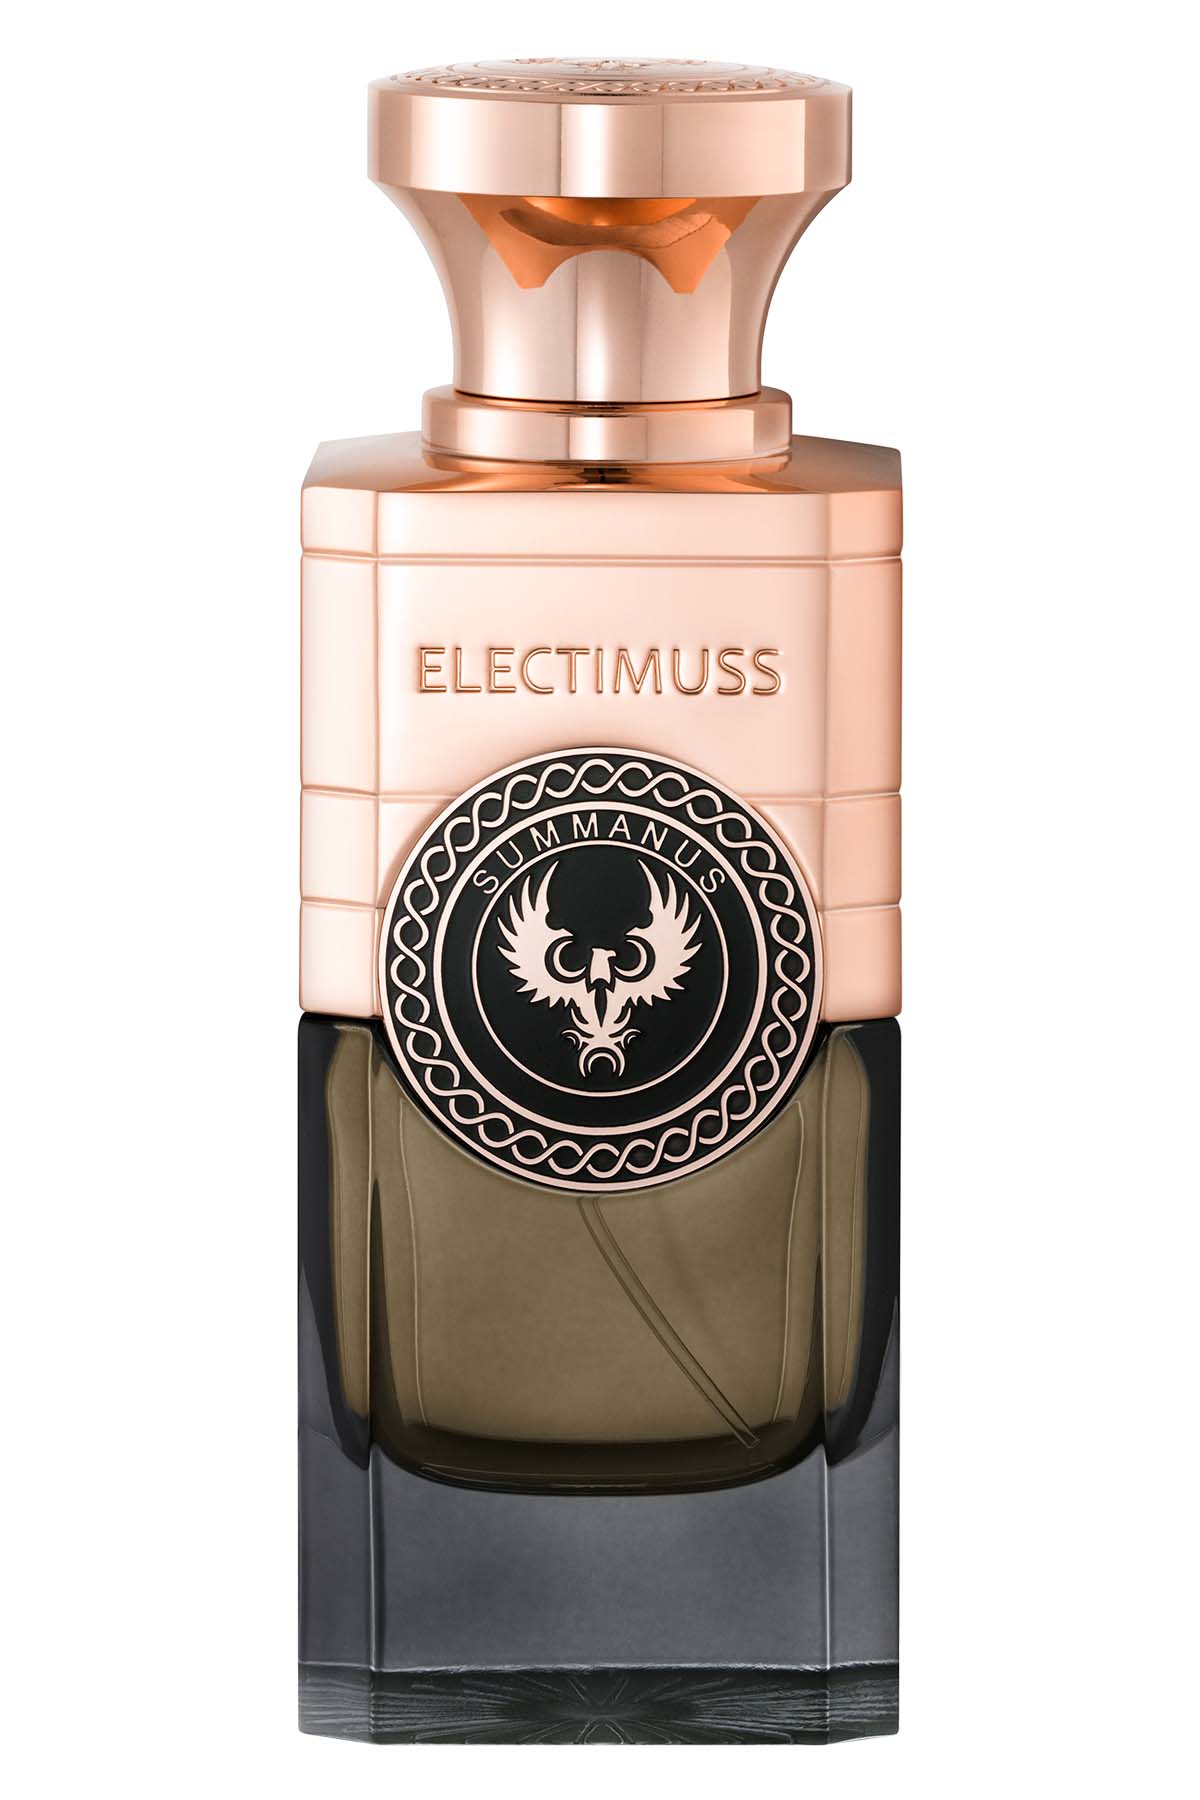 Electimuss Summanus Extrait de Parfum